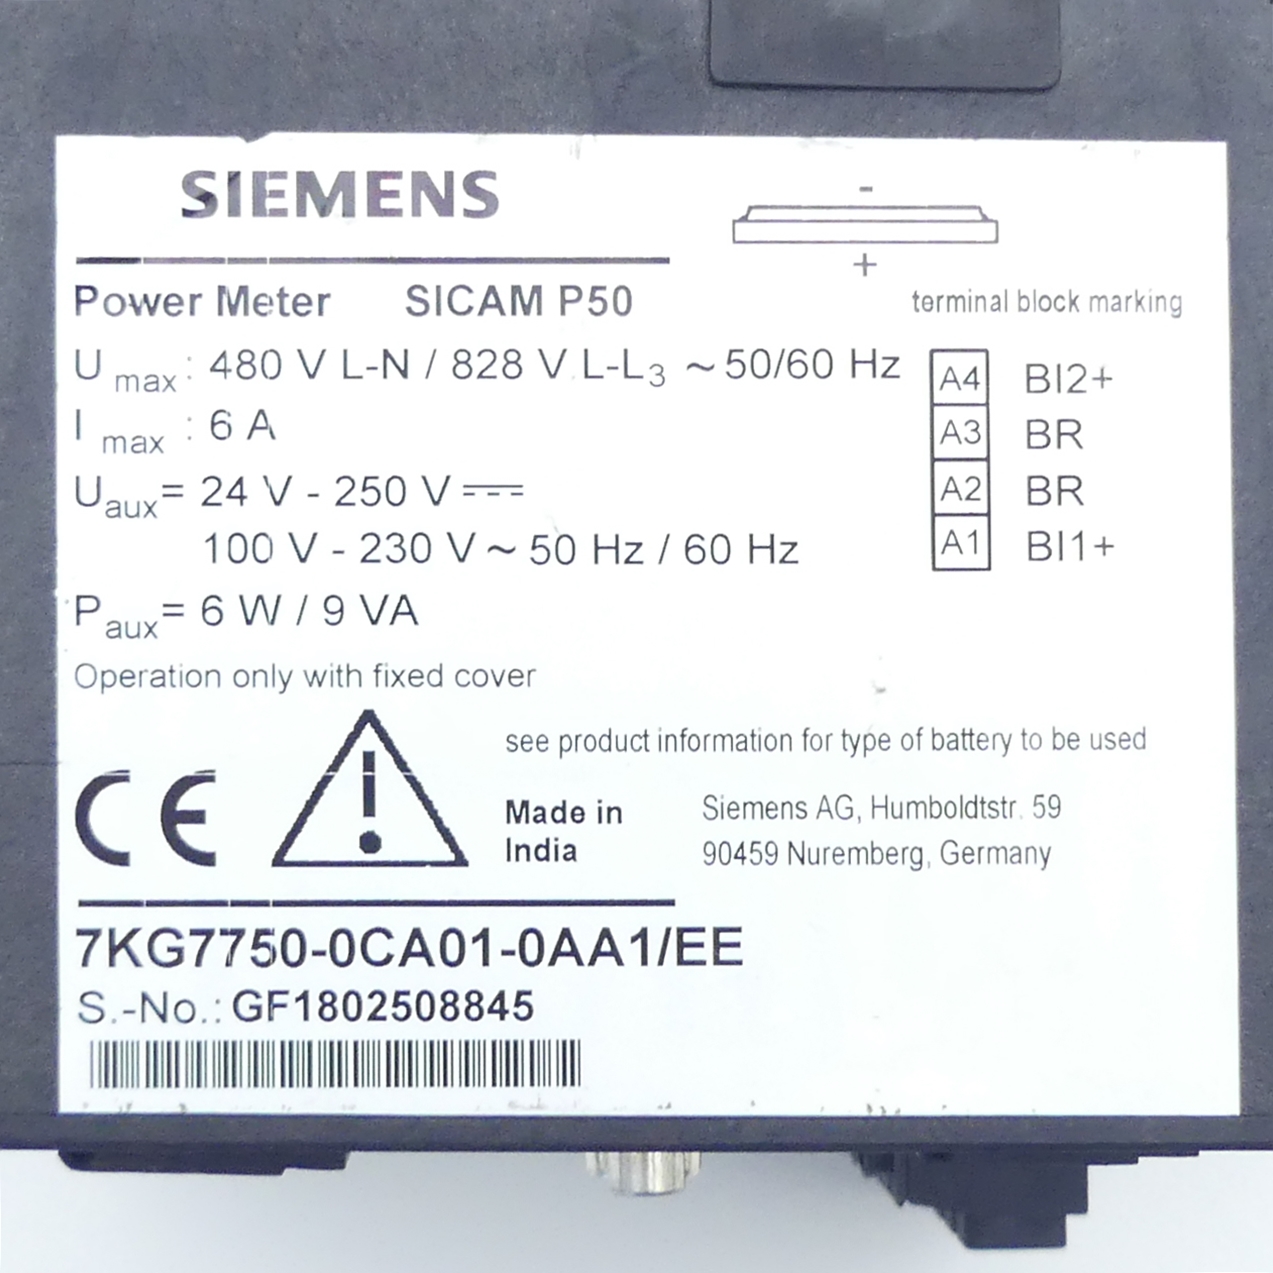 Panel meter SICAM P50 